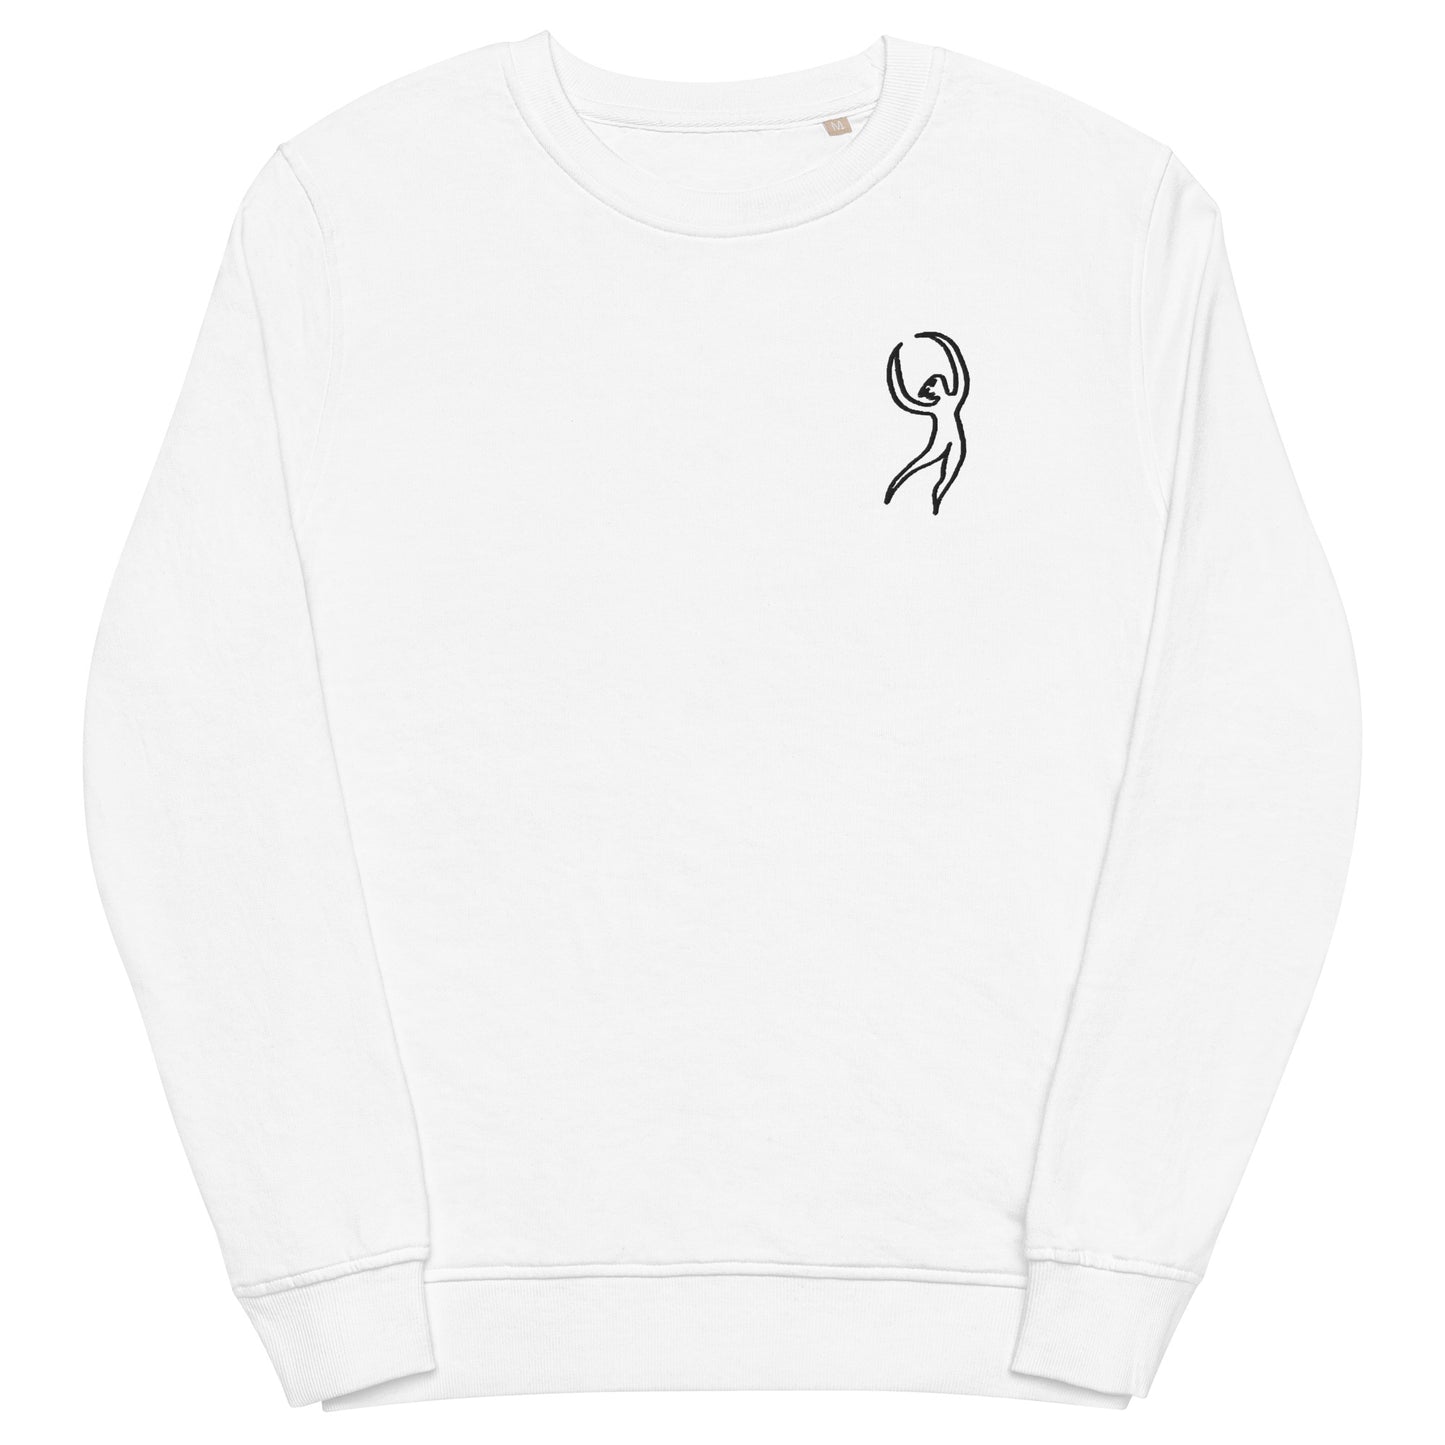 Dancer Embroidered Sweatshirt